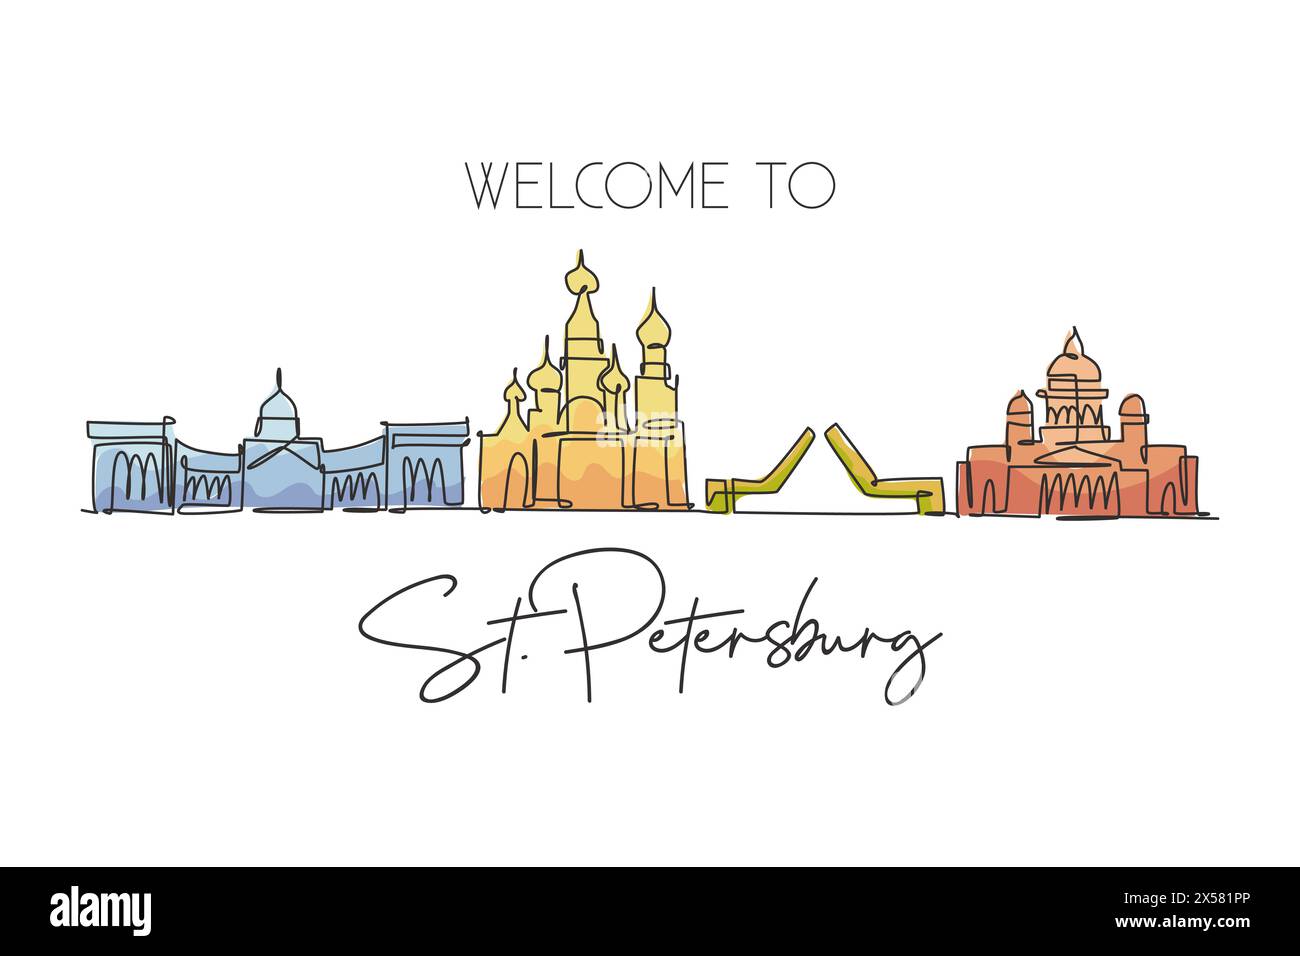 Eine durchgehende Linienzeichnung der Skyline von St. Petersburg, Russland. Wunderschönes Wahrzeichen. Weltlandschaftstourismus und Reiseurlaub. Editierbar elegant Stock Vektor